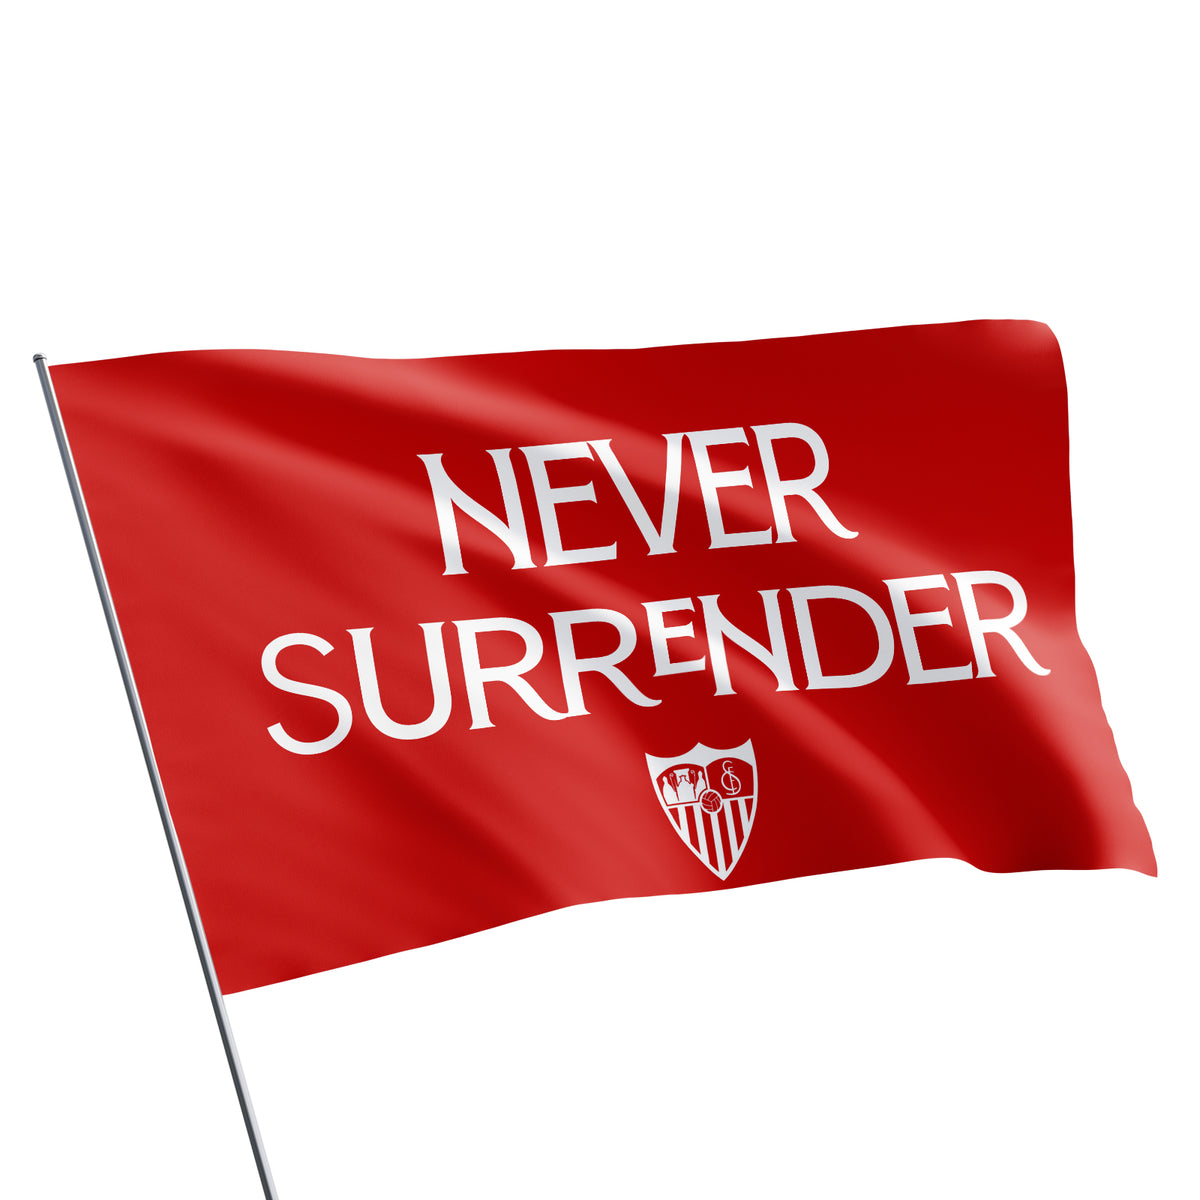 Never Surrender flag